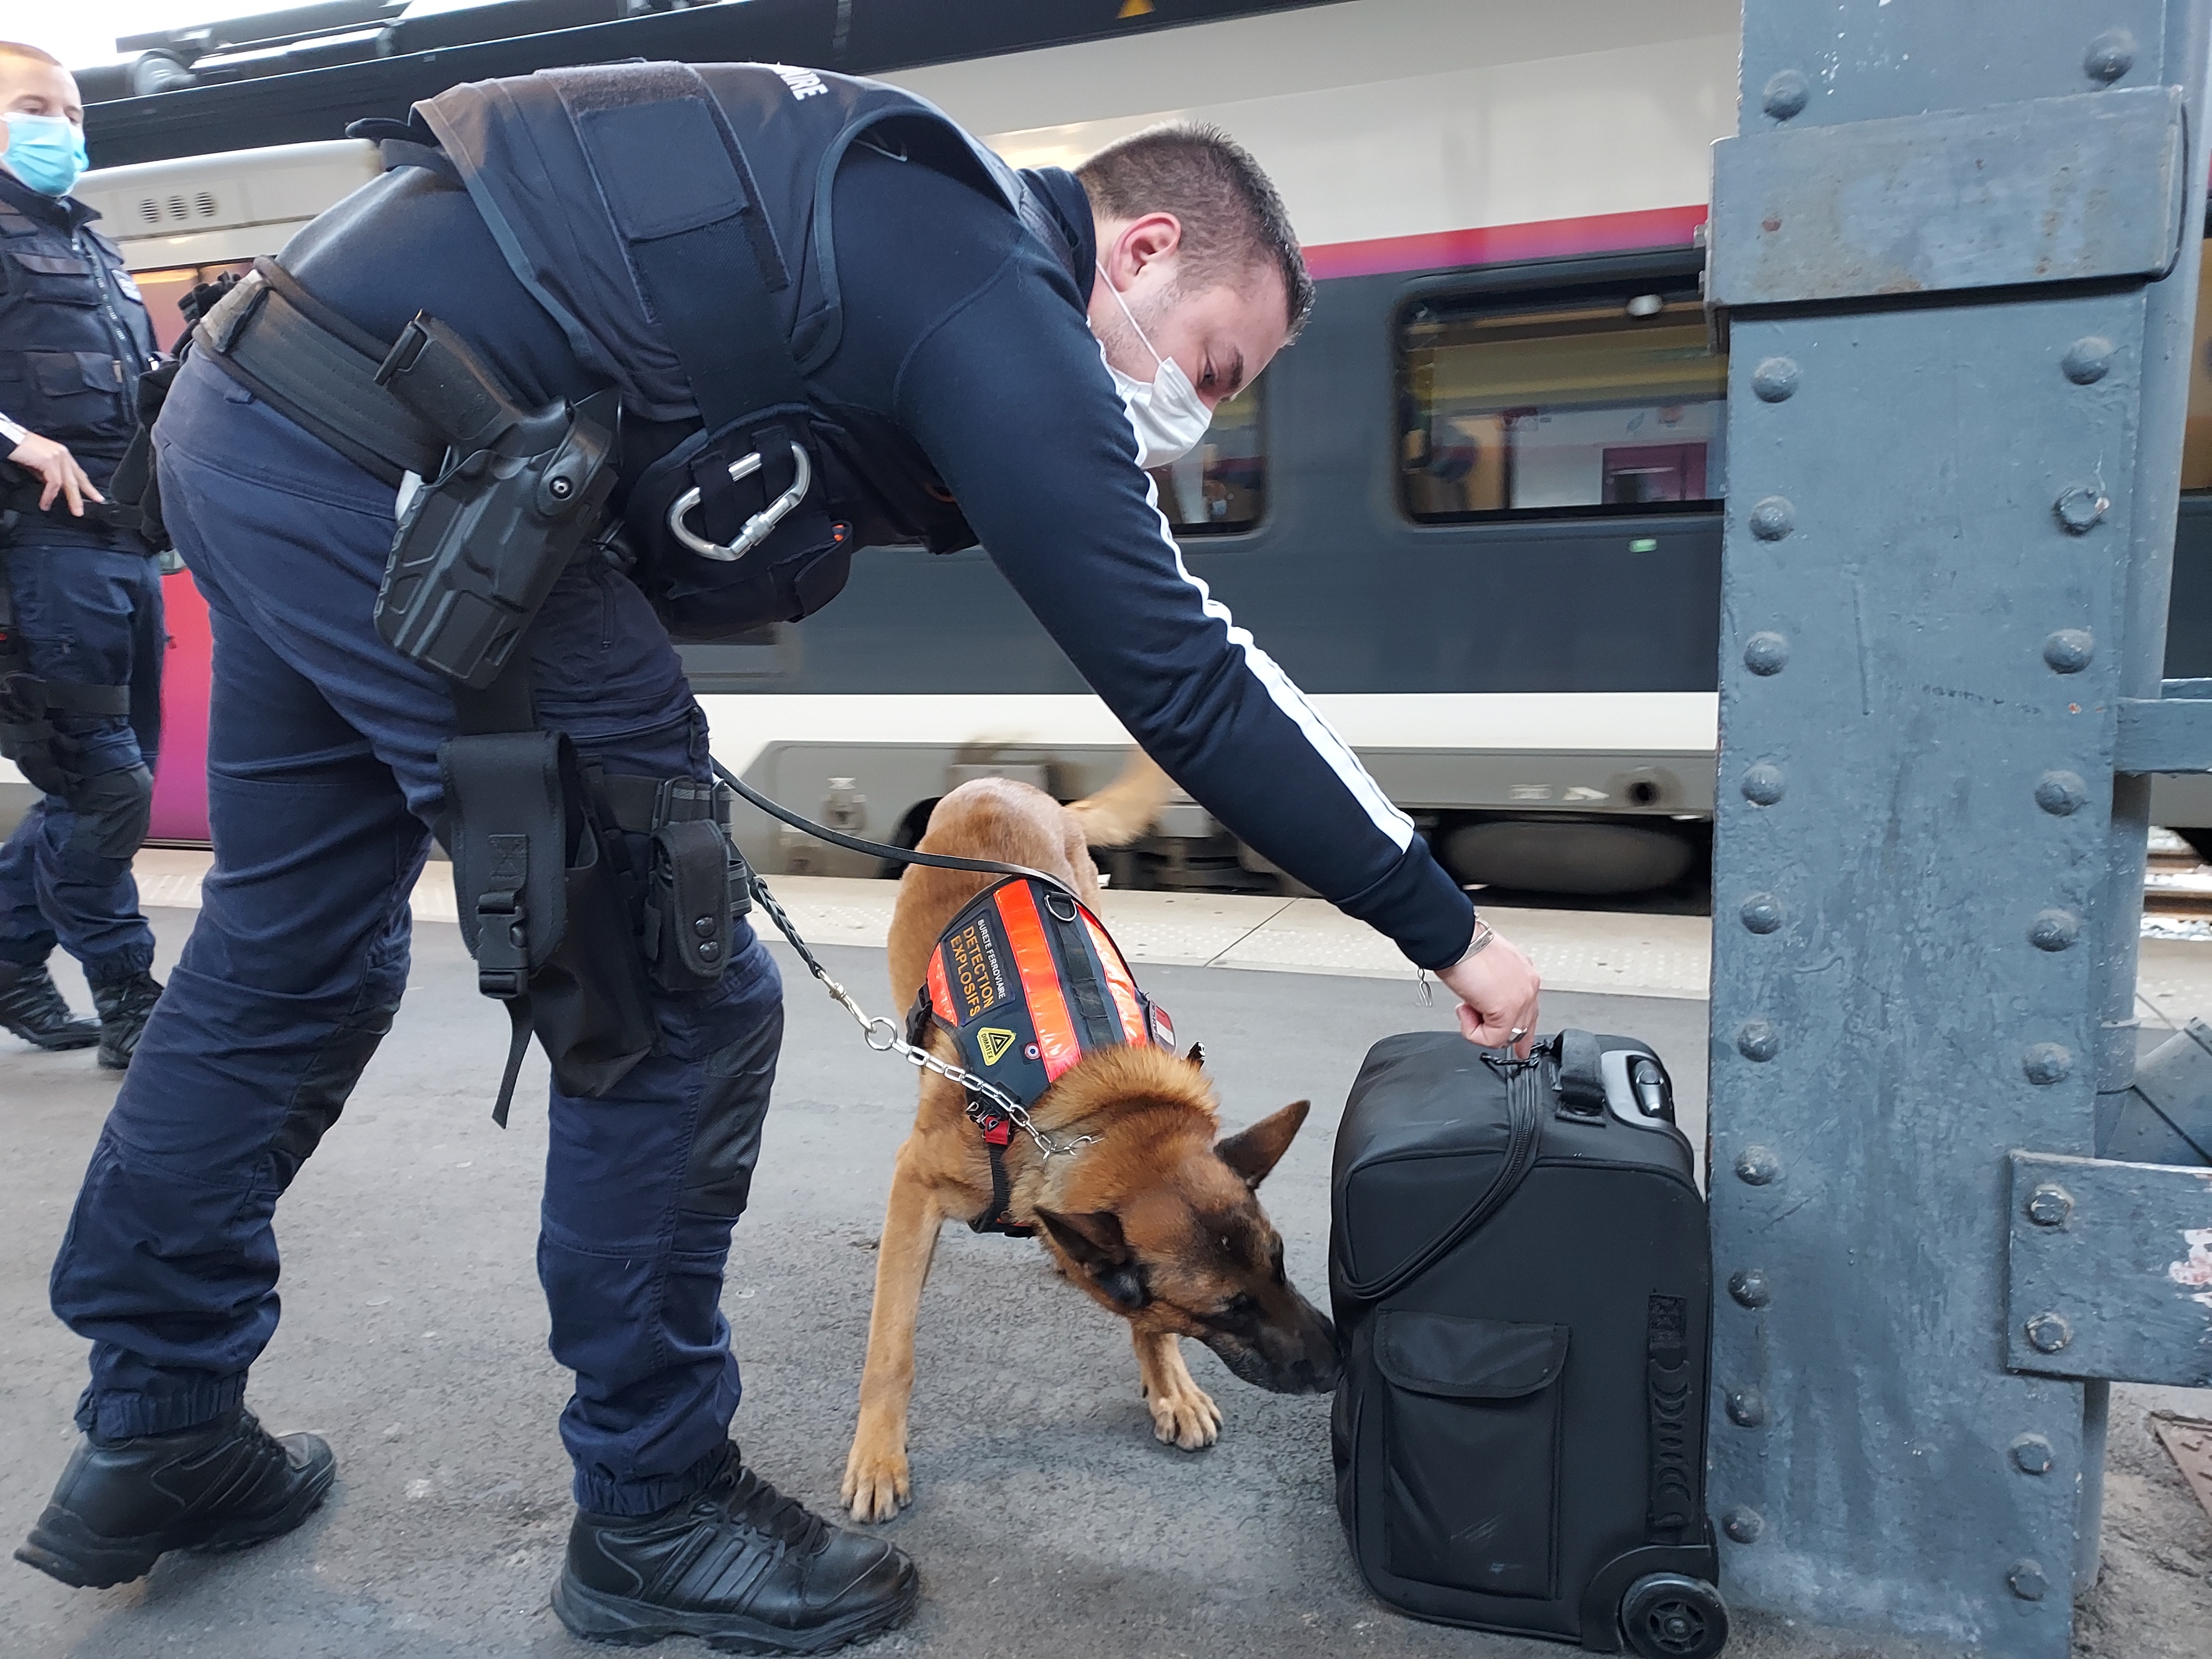 Gare de l'Est à Paris, le 15 février. Florian, 27 ans, patrouille entre les quais et les trains avec son berger belge, Jeko. LP/Céline Carez